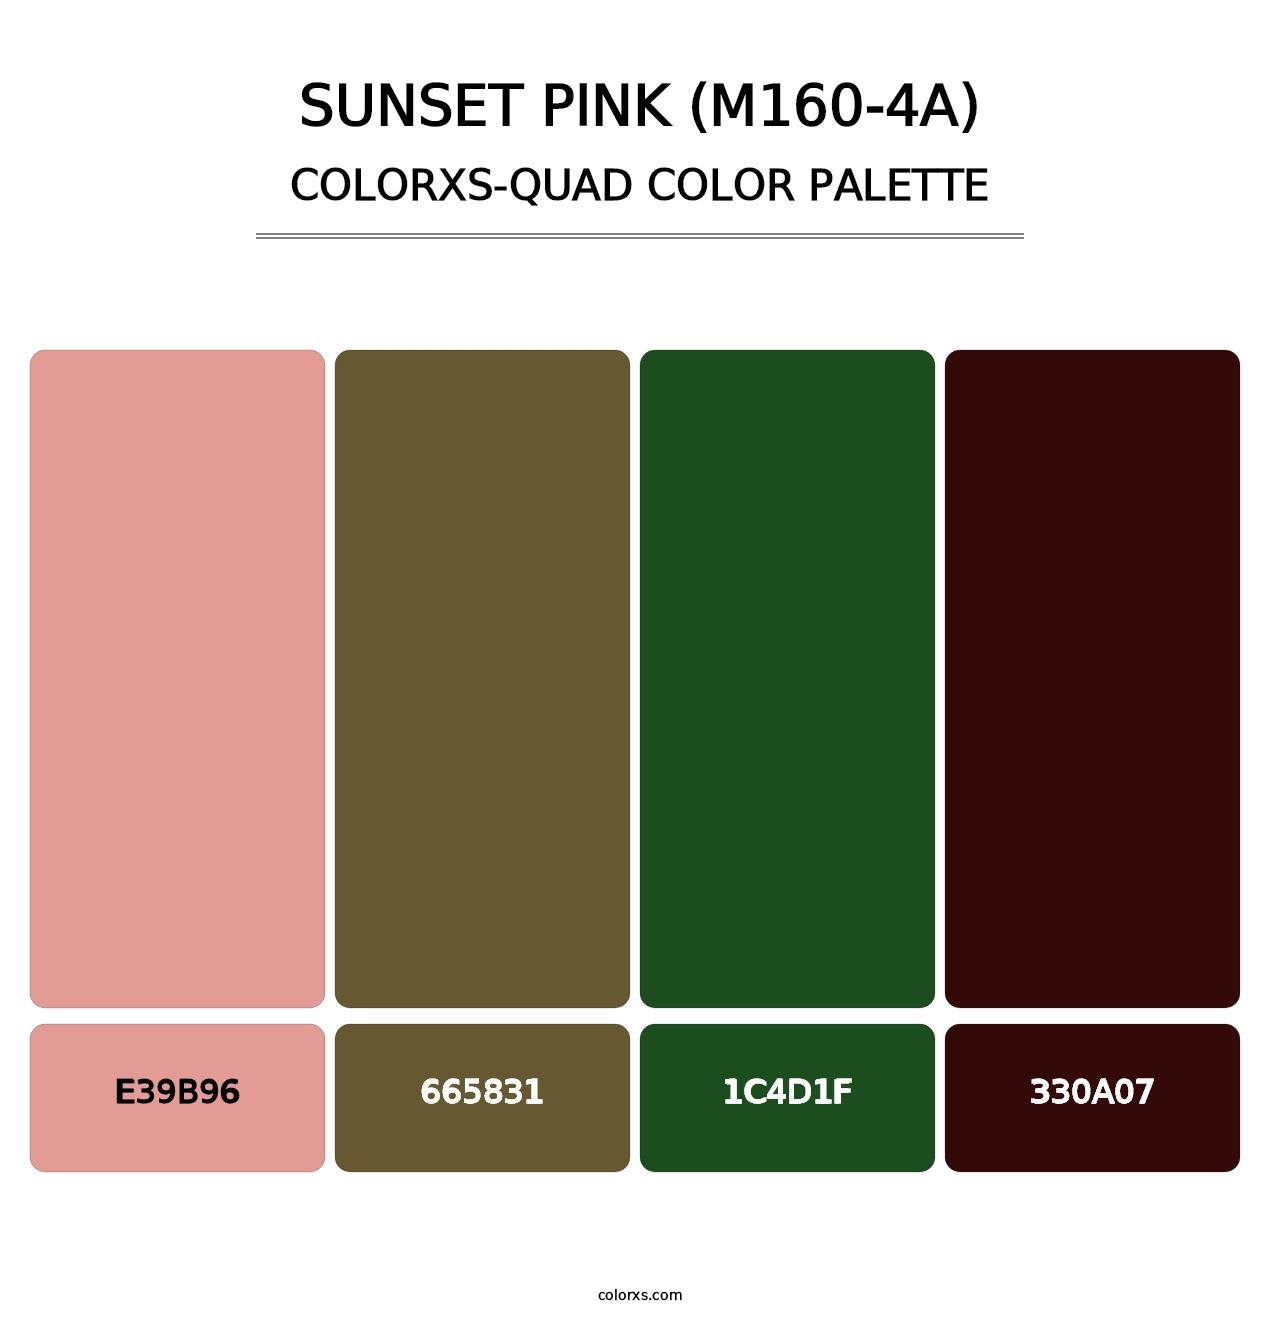 Sunset Pink (M160-4A) - Colorxs Quad Palette